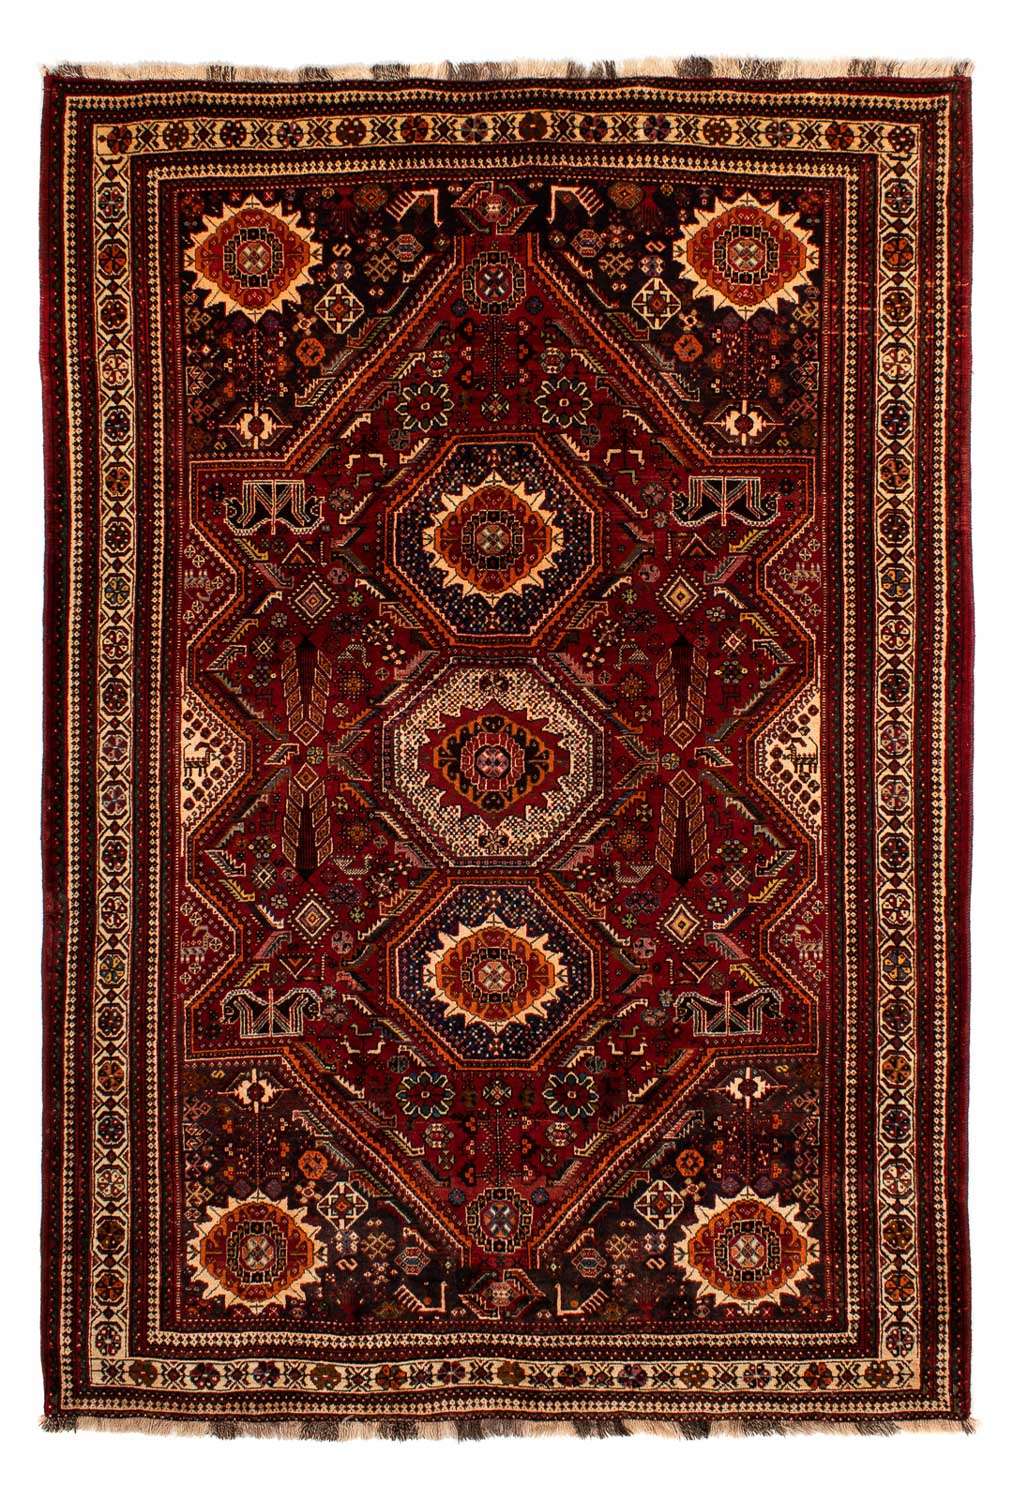 Tapis persan - Nomadic - 310 x 210 cm - rouge foncé